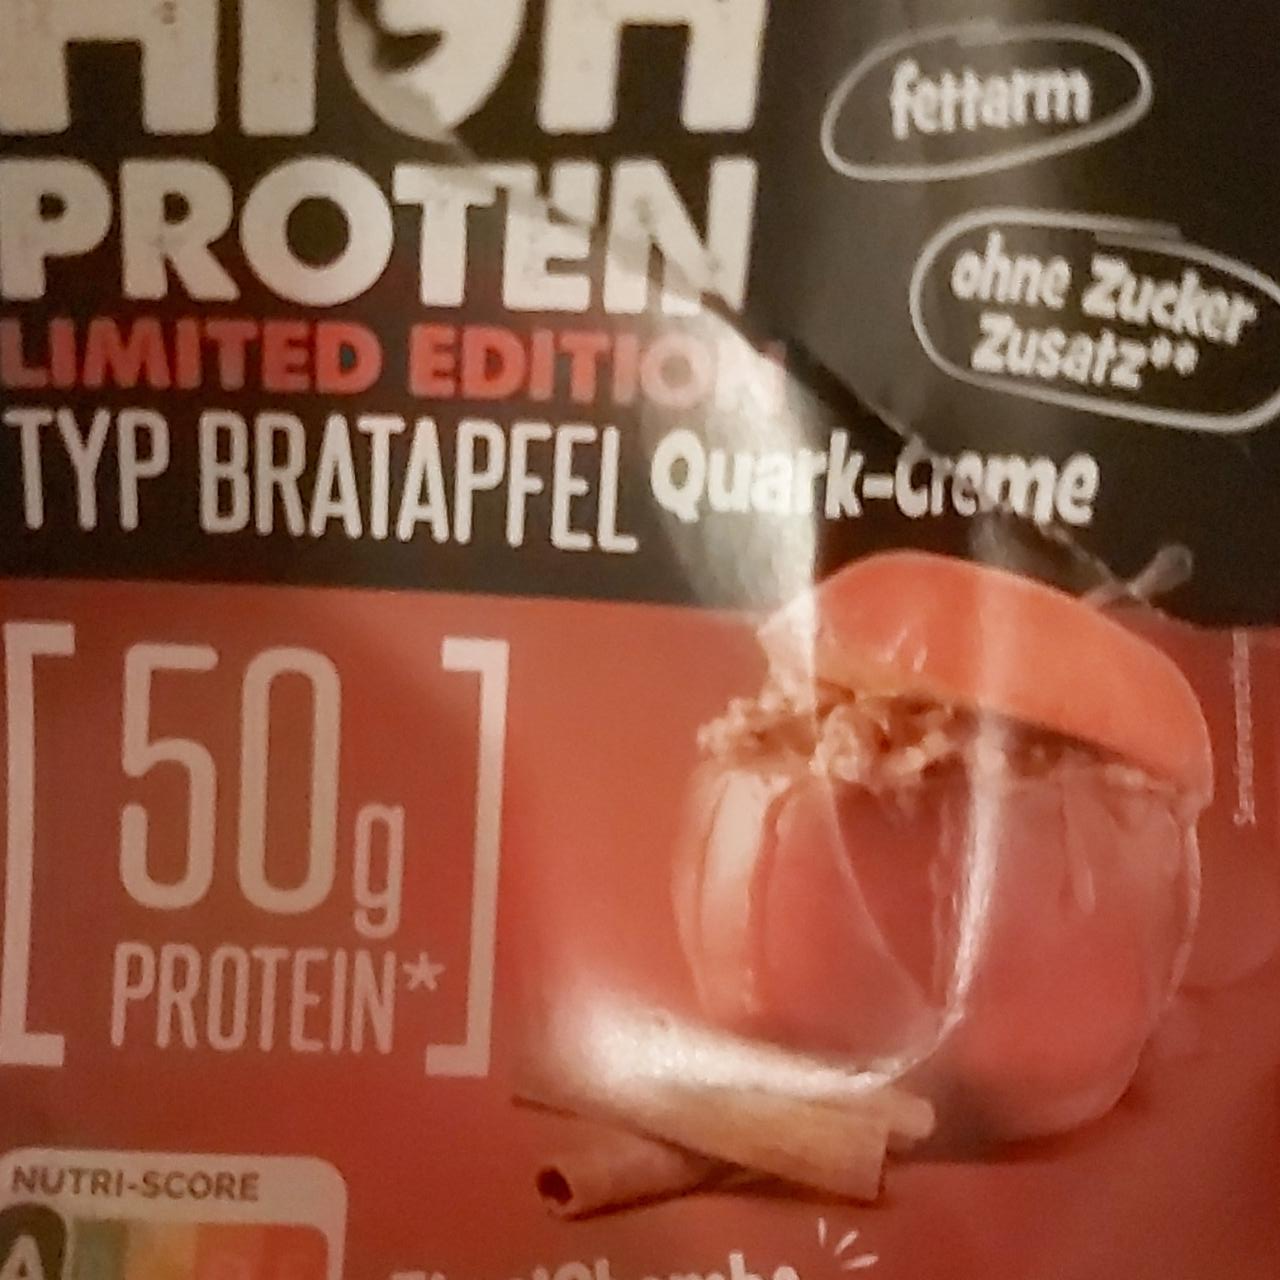 Фото - High protein quark-creme typ bratapfel Milbona